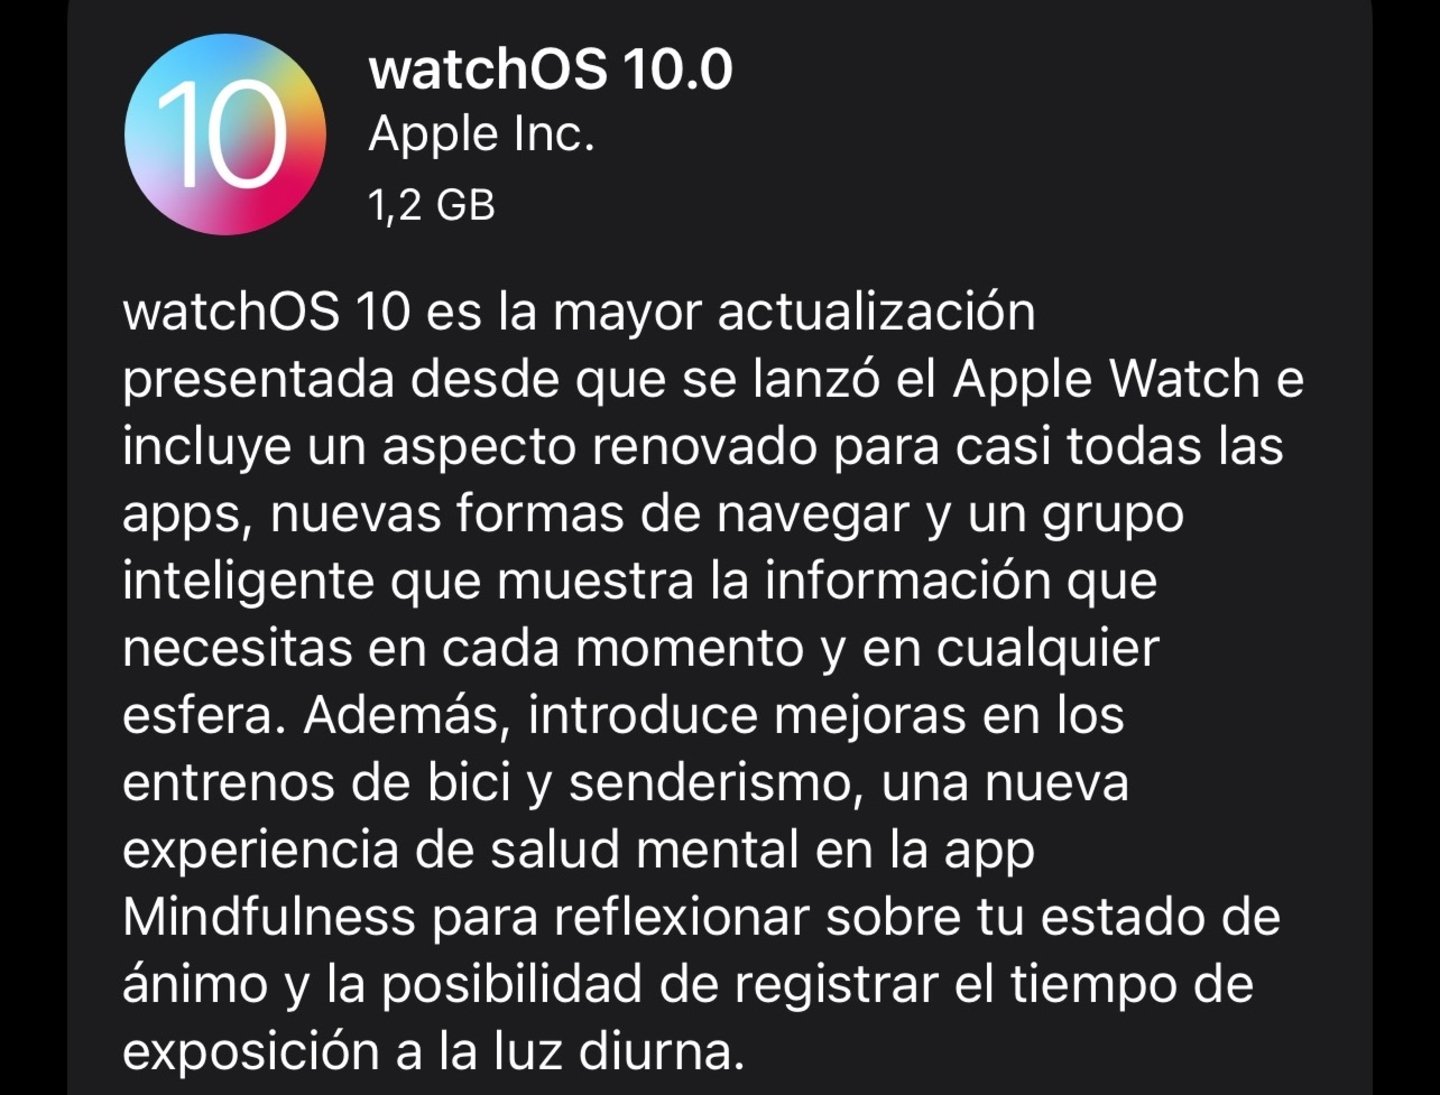 watchOS 10